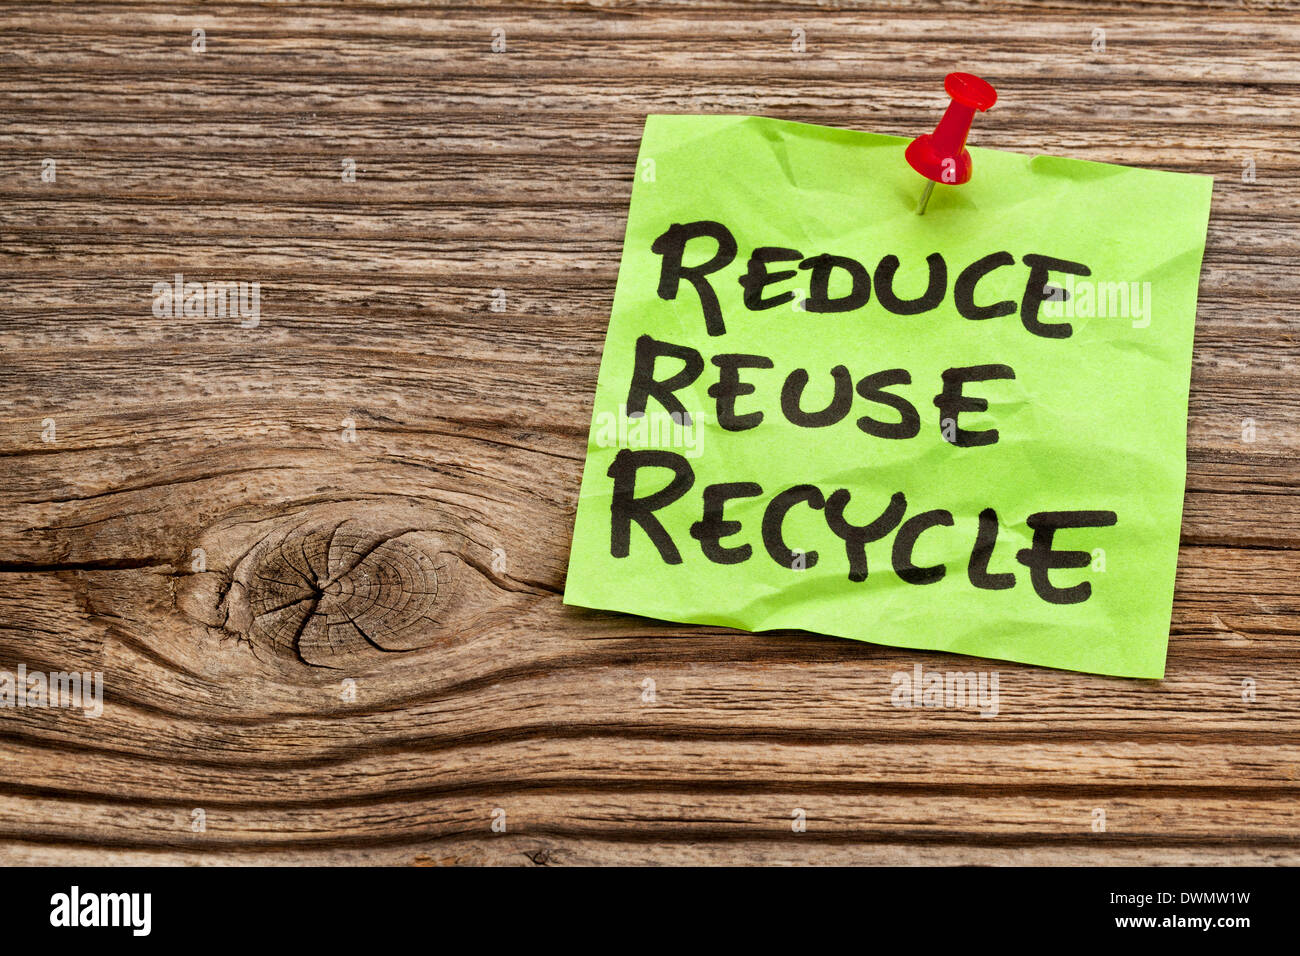 Verringerung, Wiederverwendung und Recycling Erinnerungsschreiben gegen gemaserte Holz - Ressource Konservierungskonzept Stockfoto